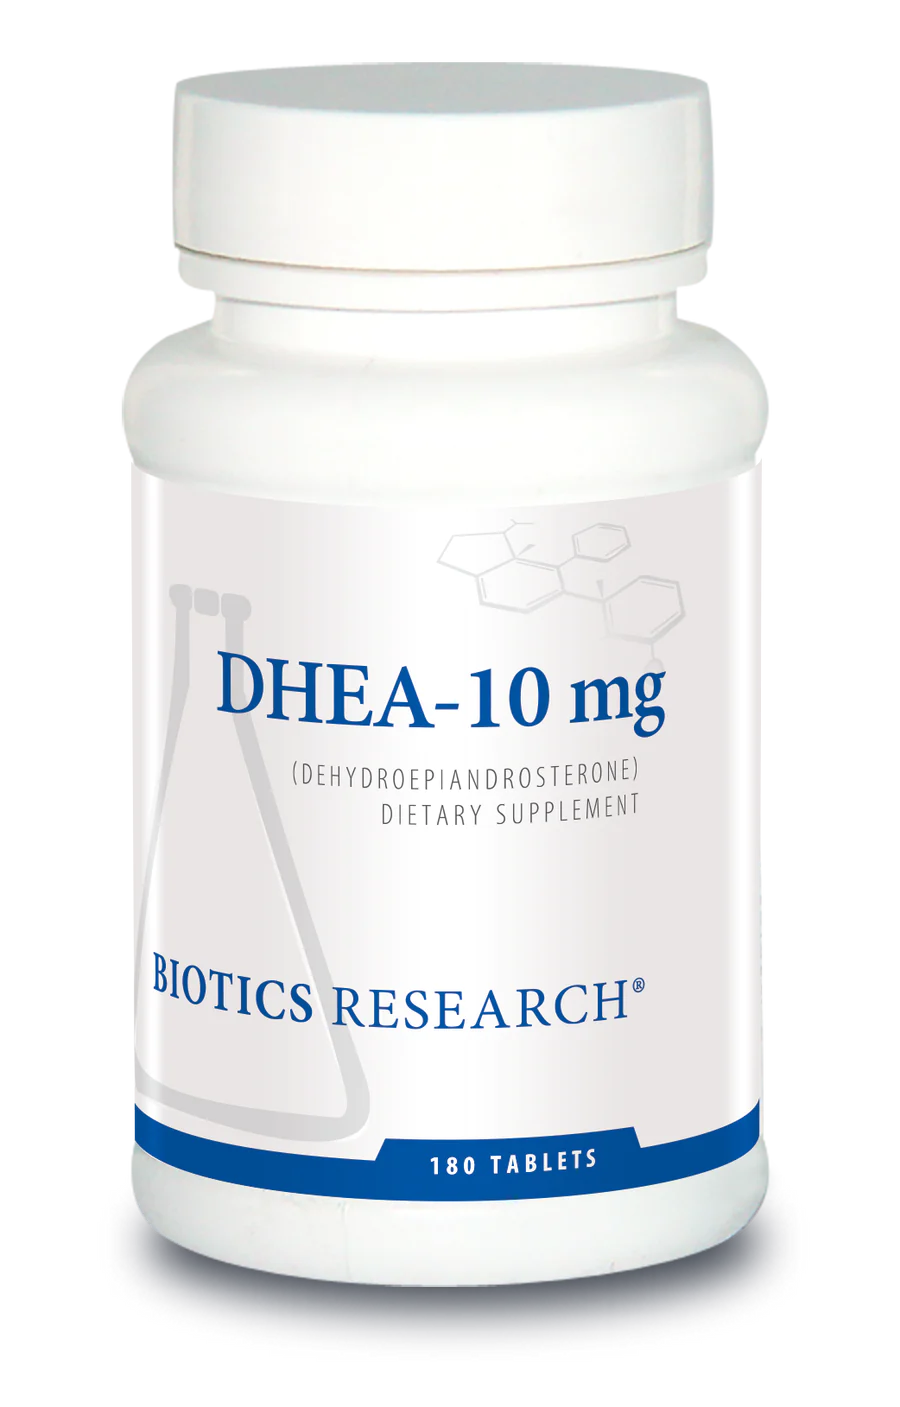 DHEA-10 mg